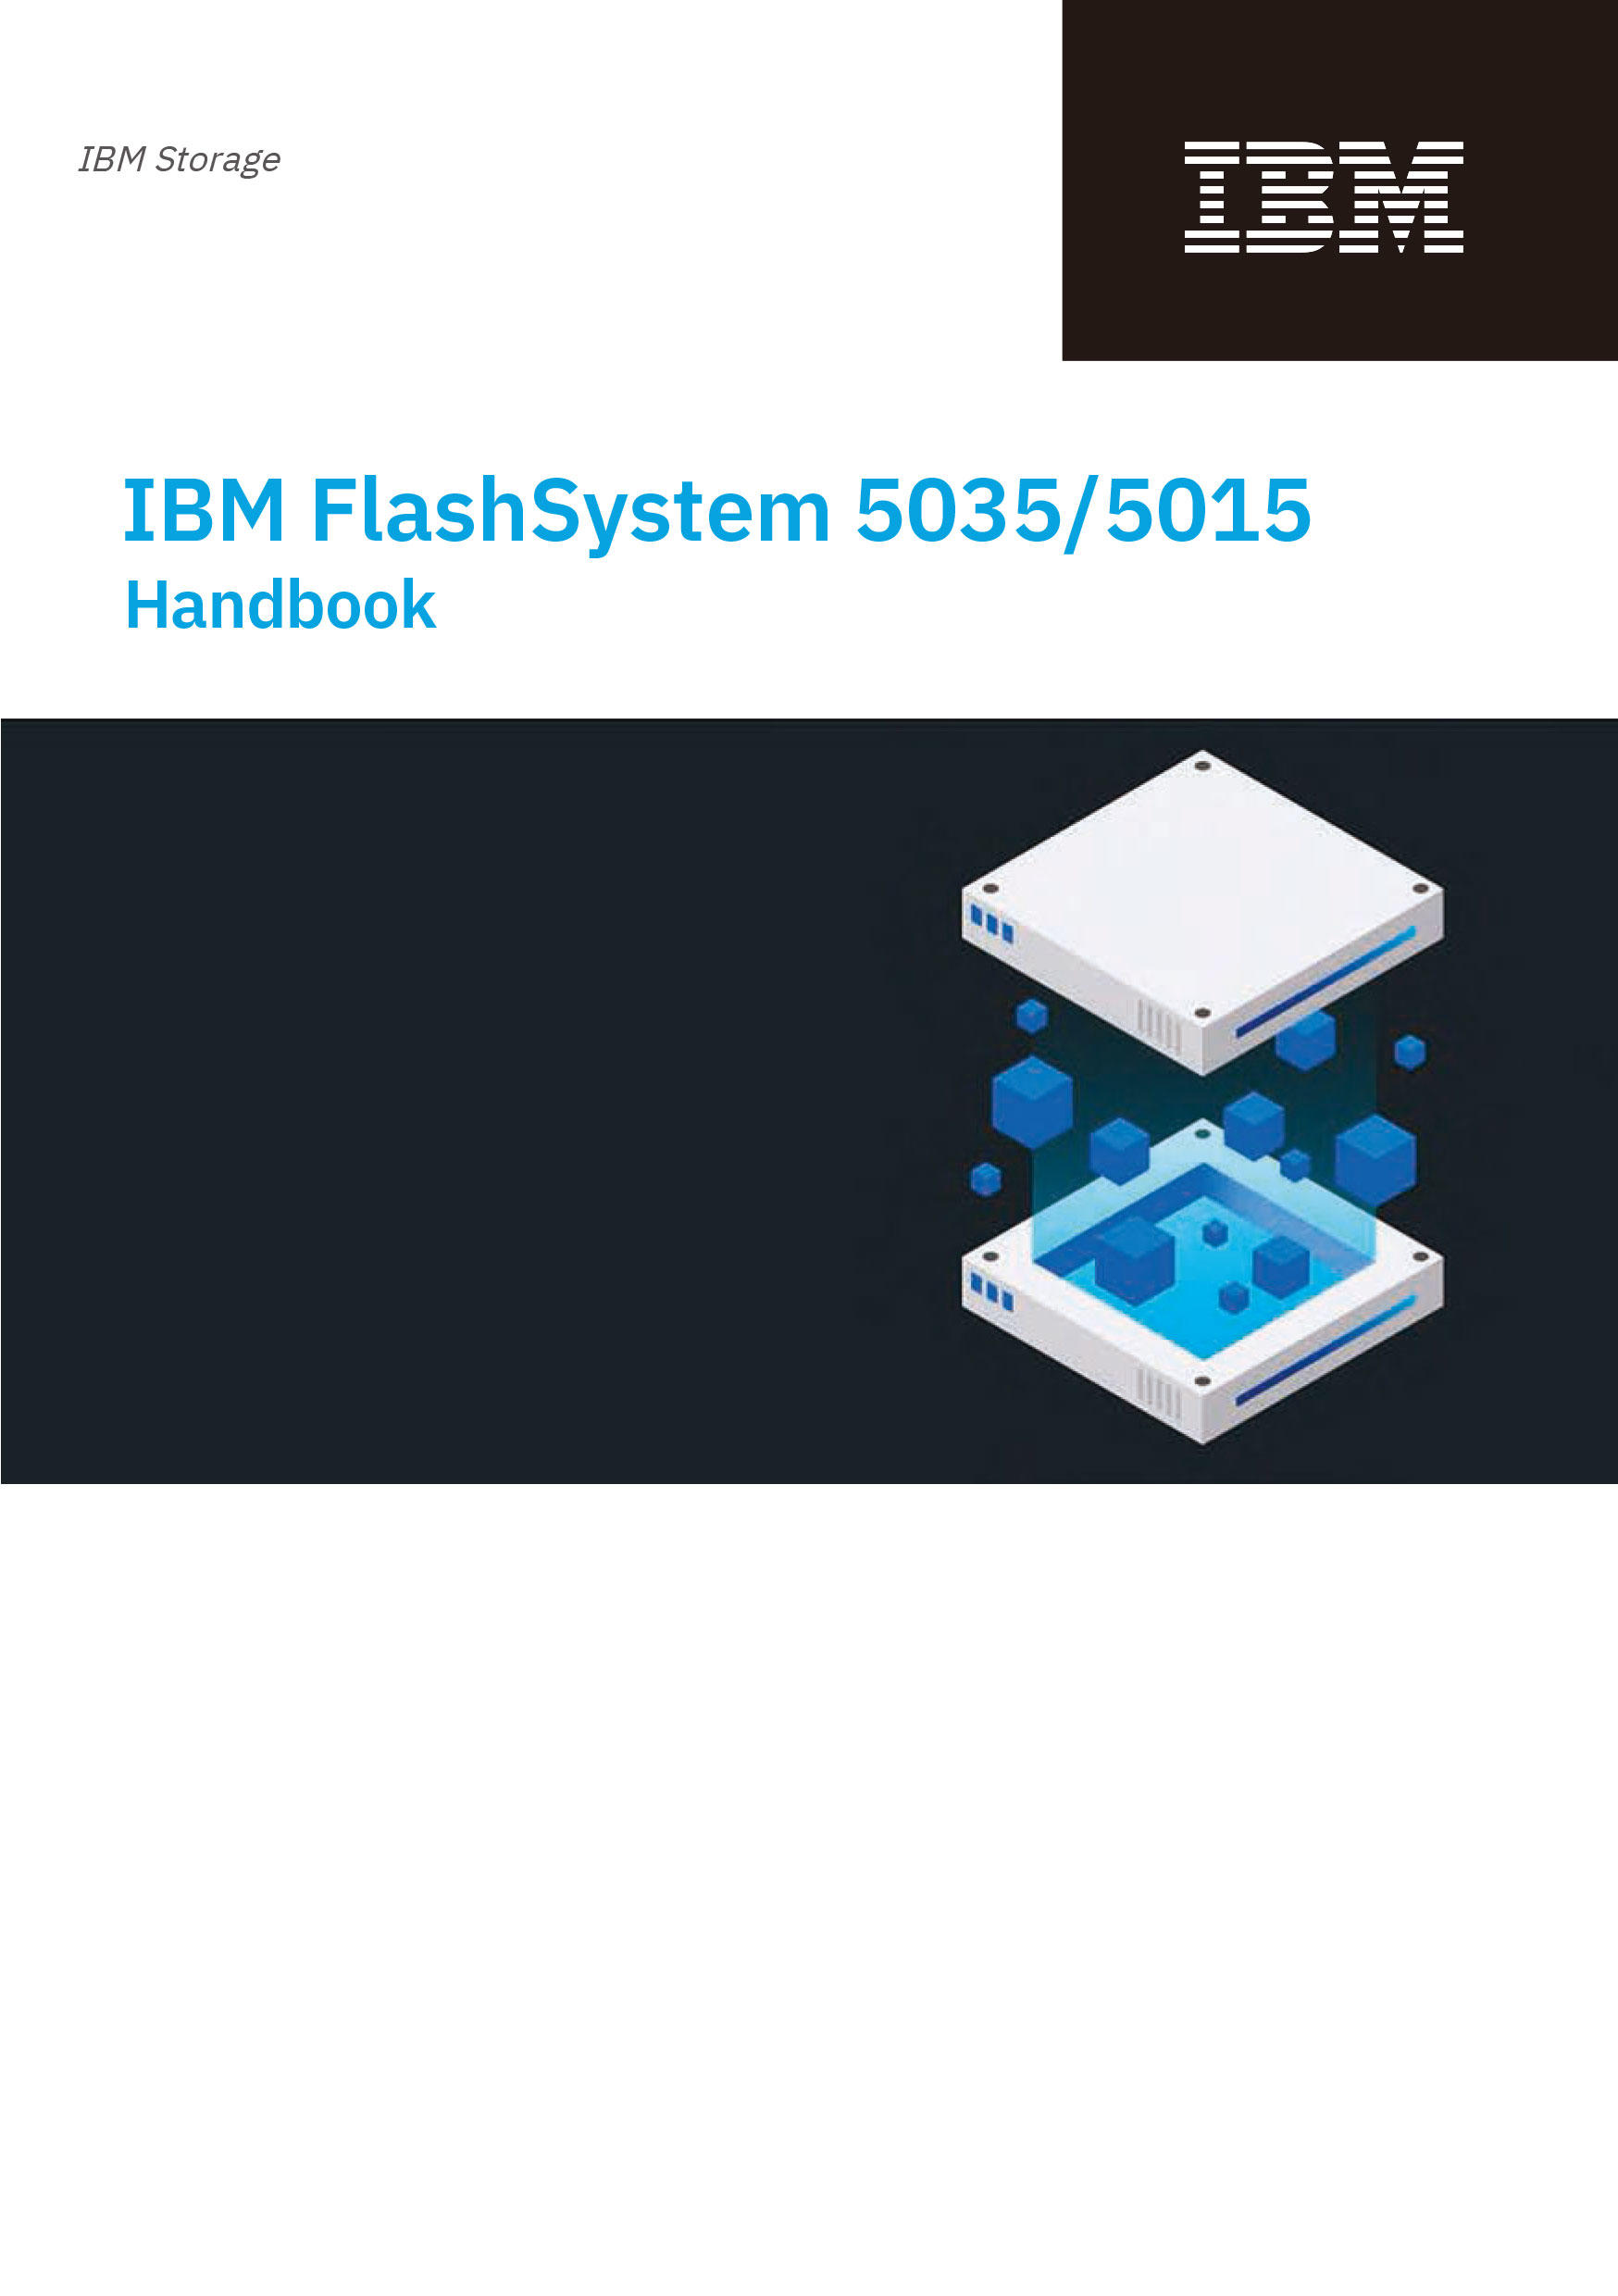 IBM-FlashSystem_handbookcover_ver2.jpg